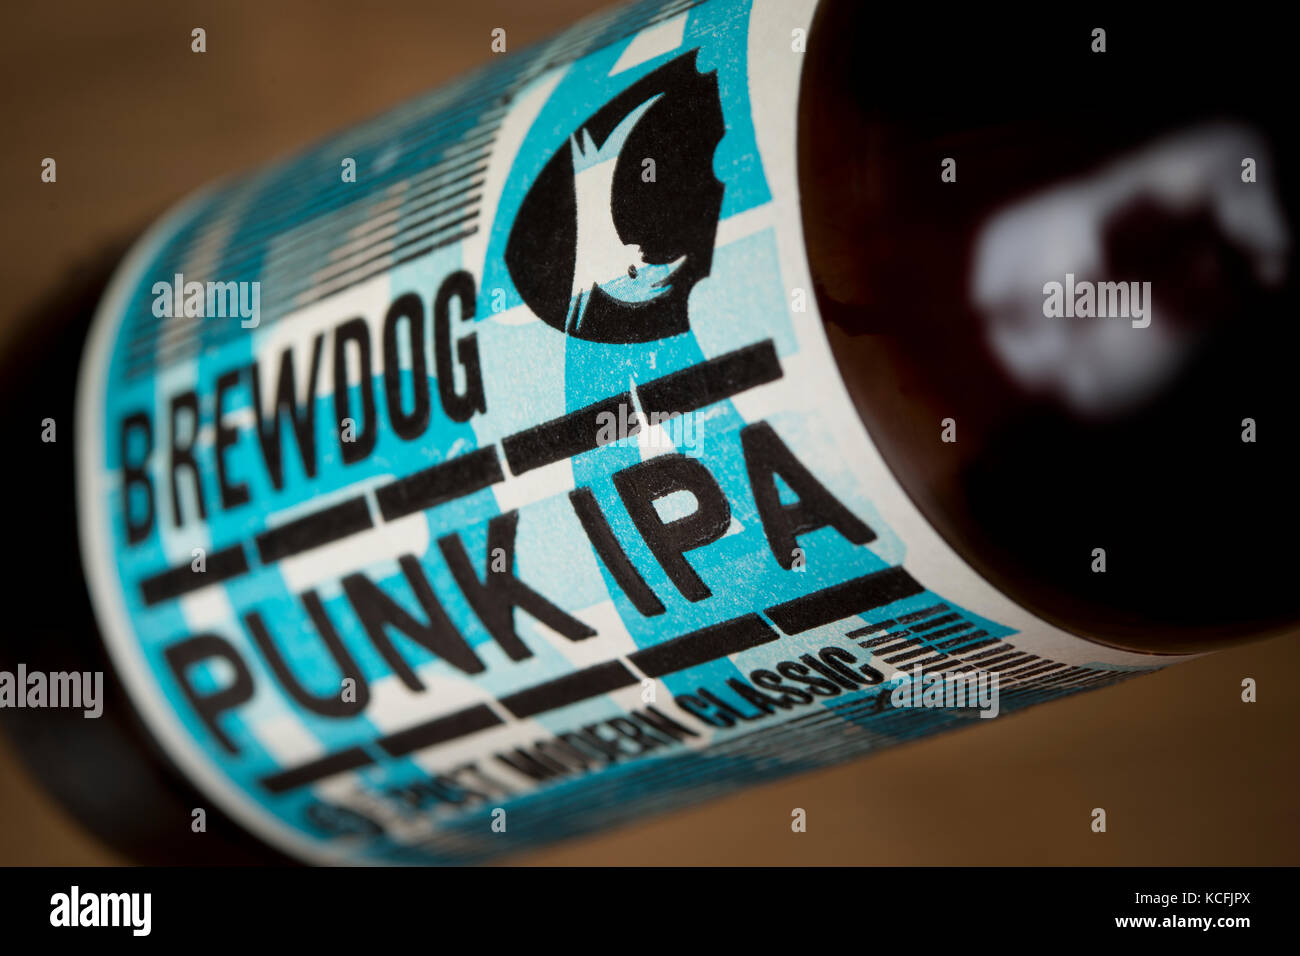 Eine Nahaufnahme von einer Flasche Punk IPA von der Schottischen gebraut gegründete Brauerei BrewDog (nur redaktionelle Nutzung). Stockfoto